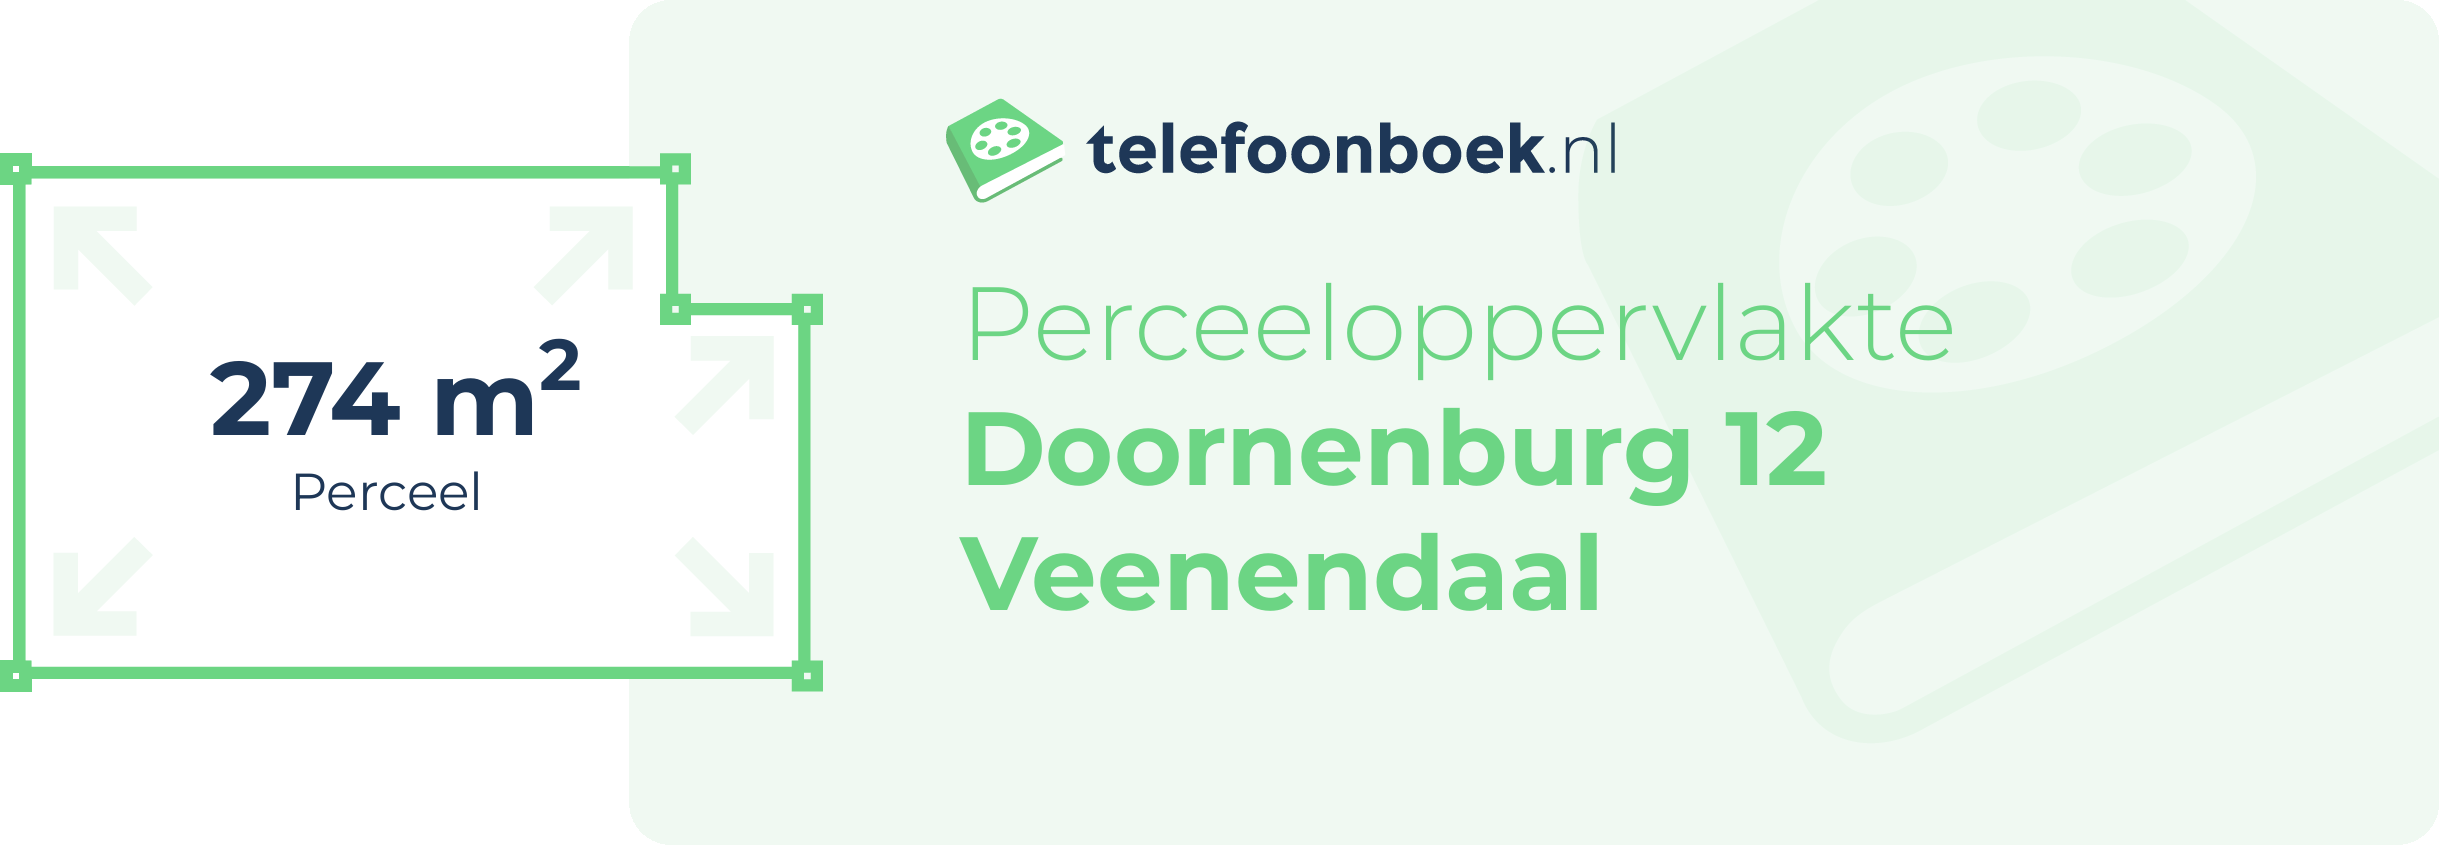 Perceeloppervlakte Doornenburg 12 Veenendaal